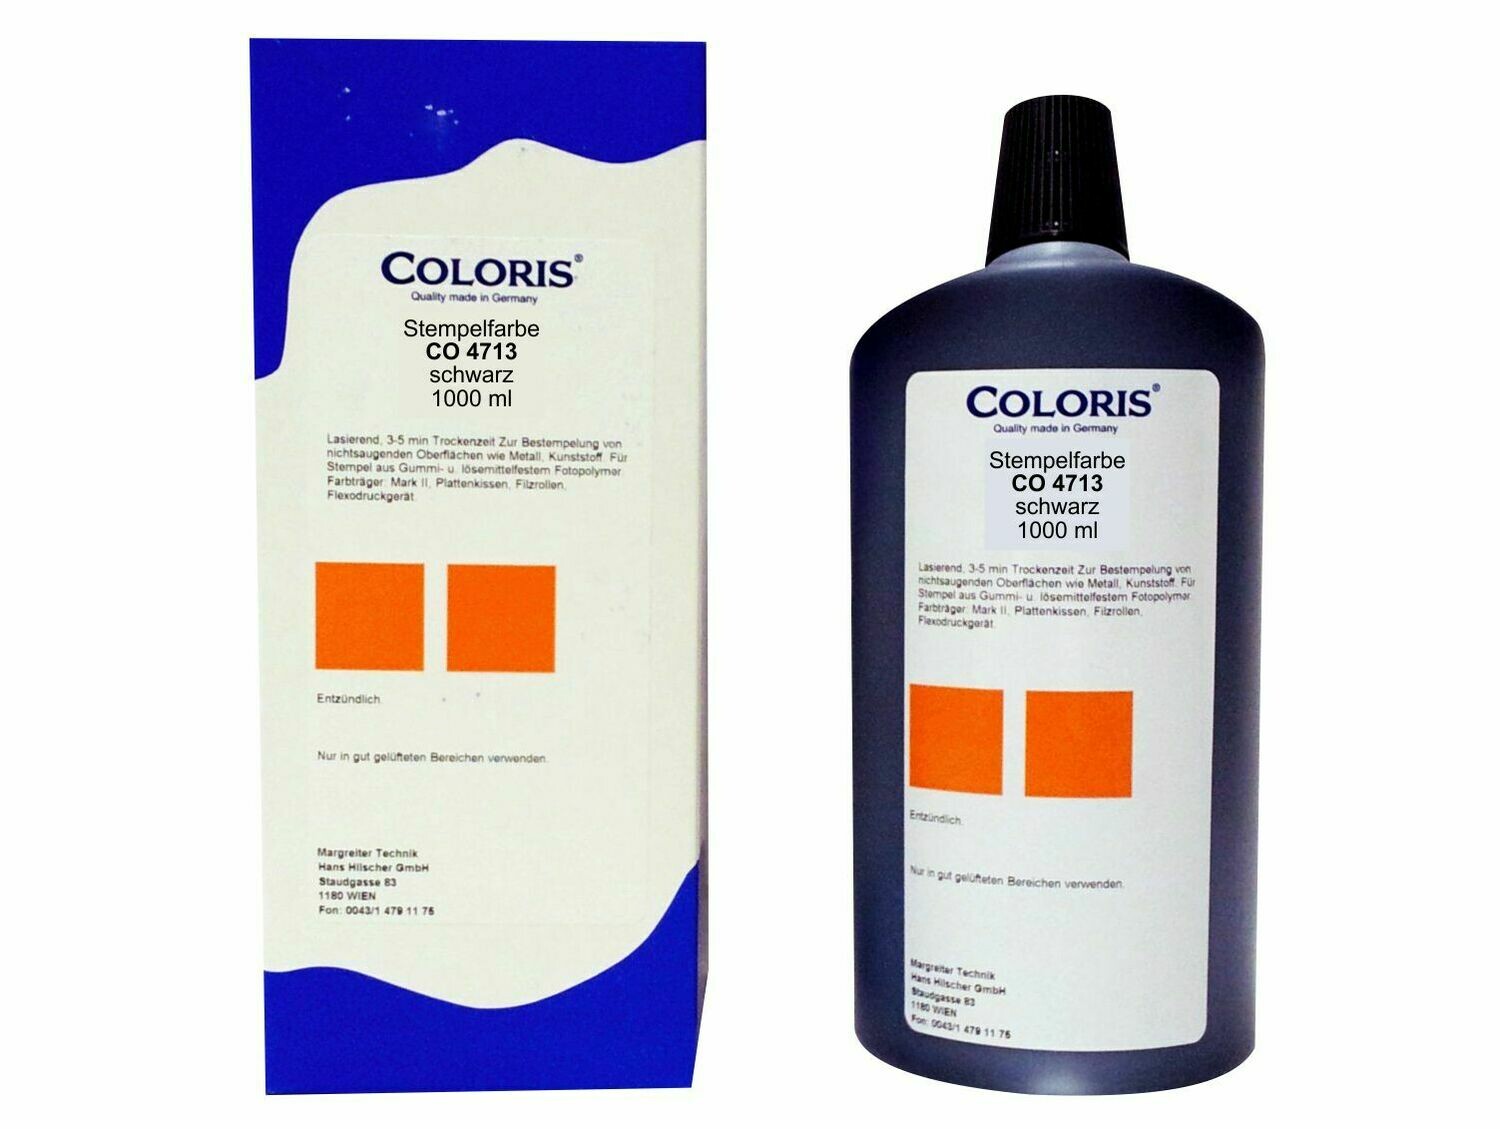 Coloris Stempelfarbe CO 4713